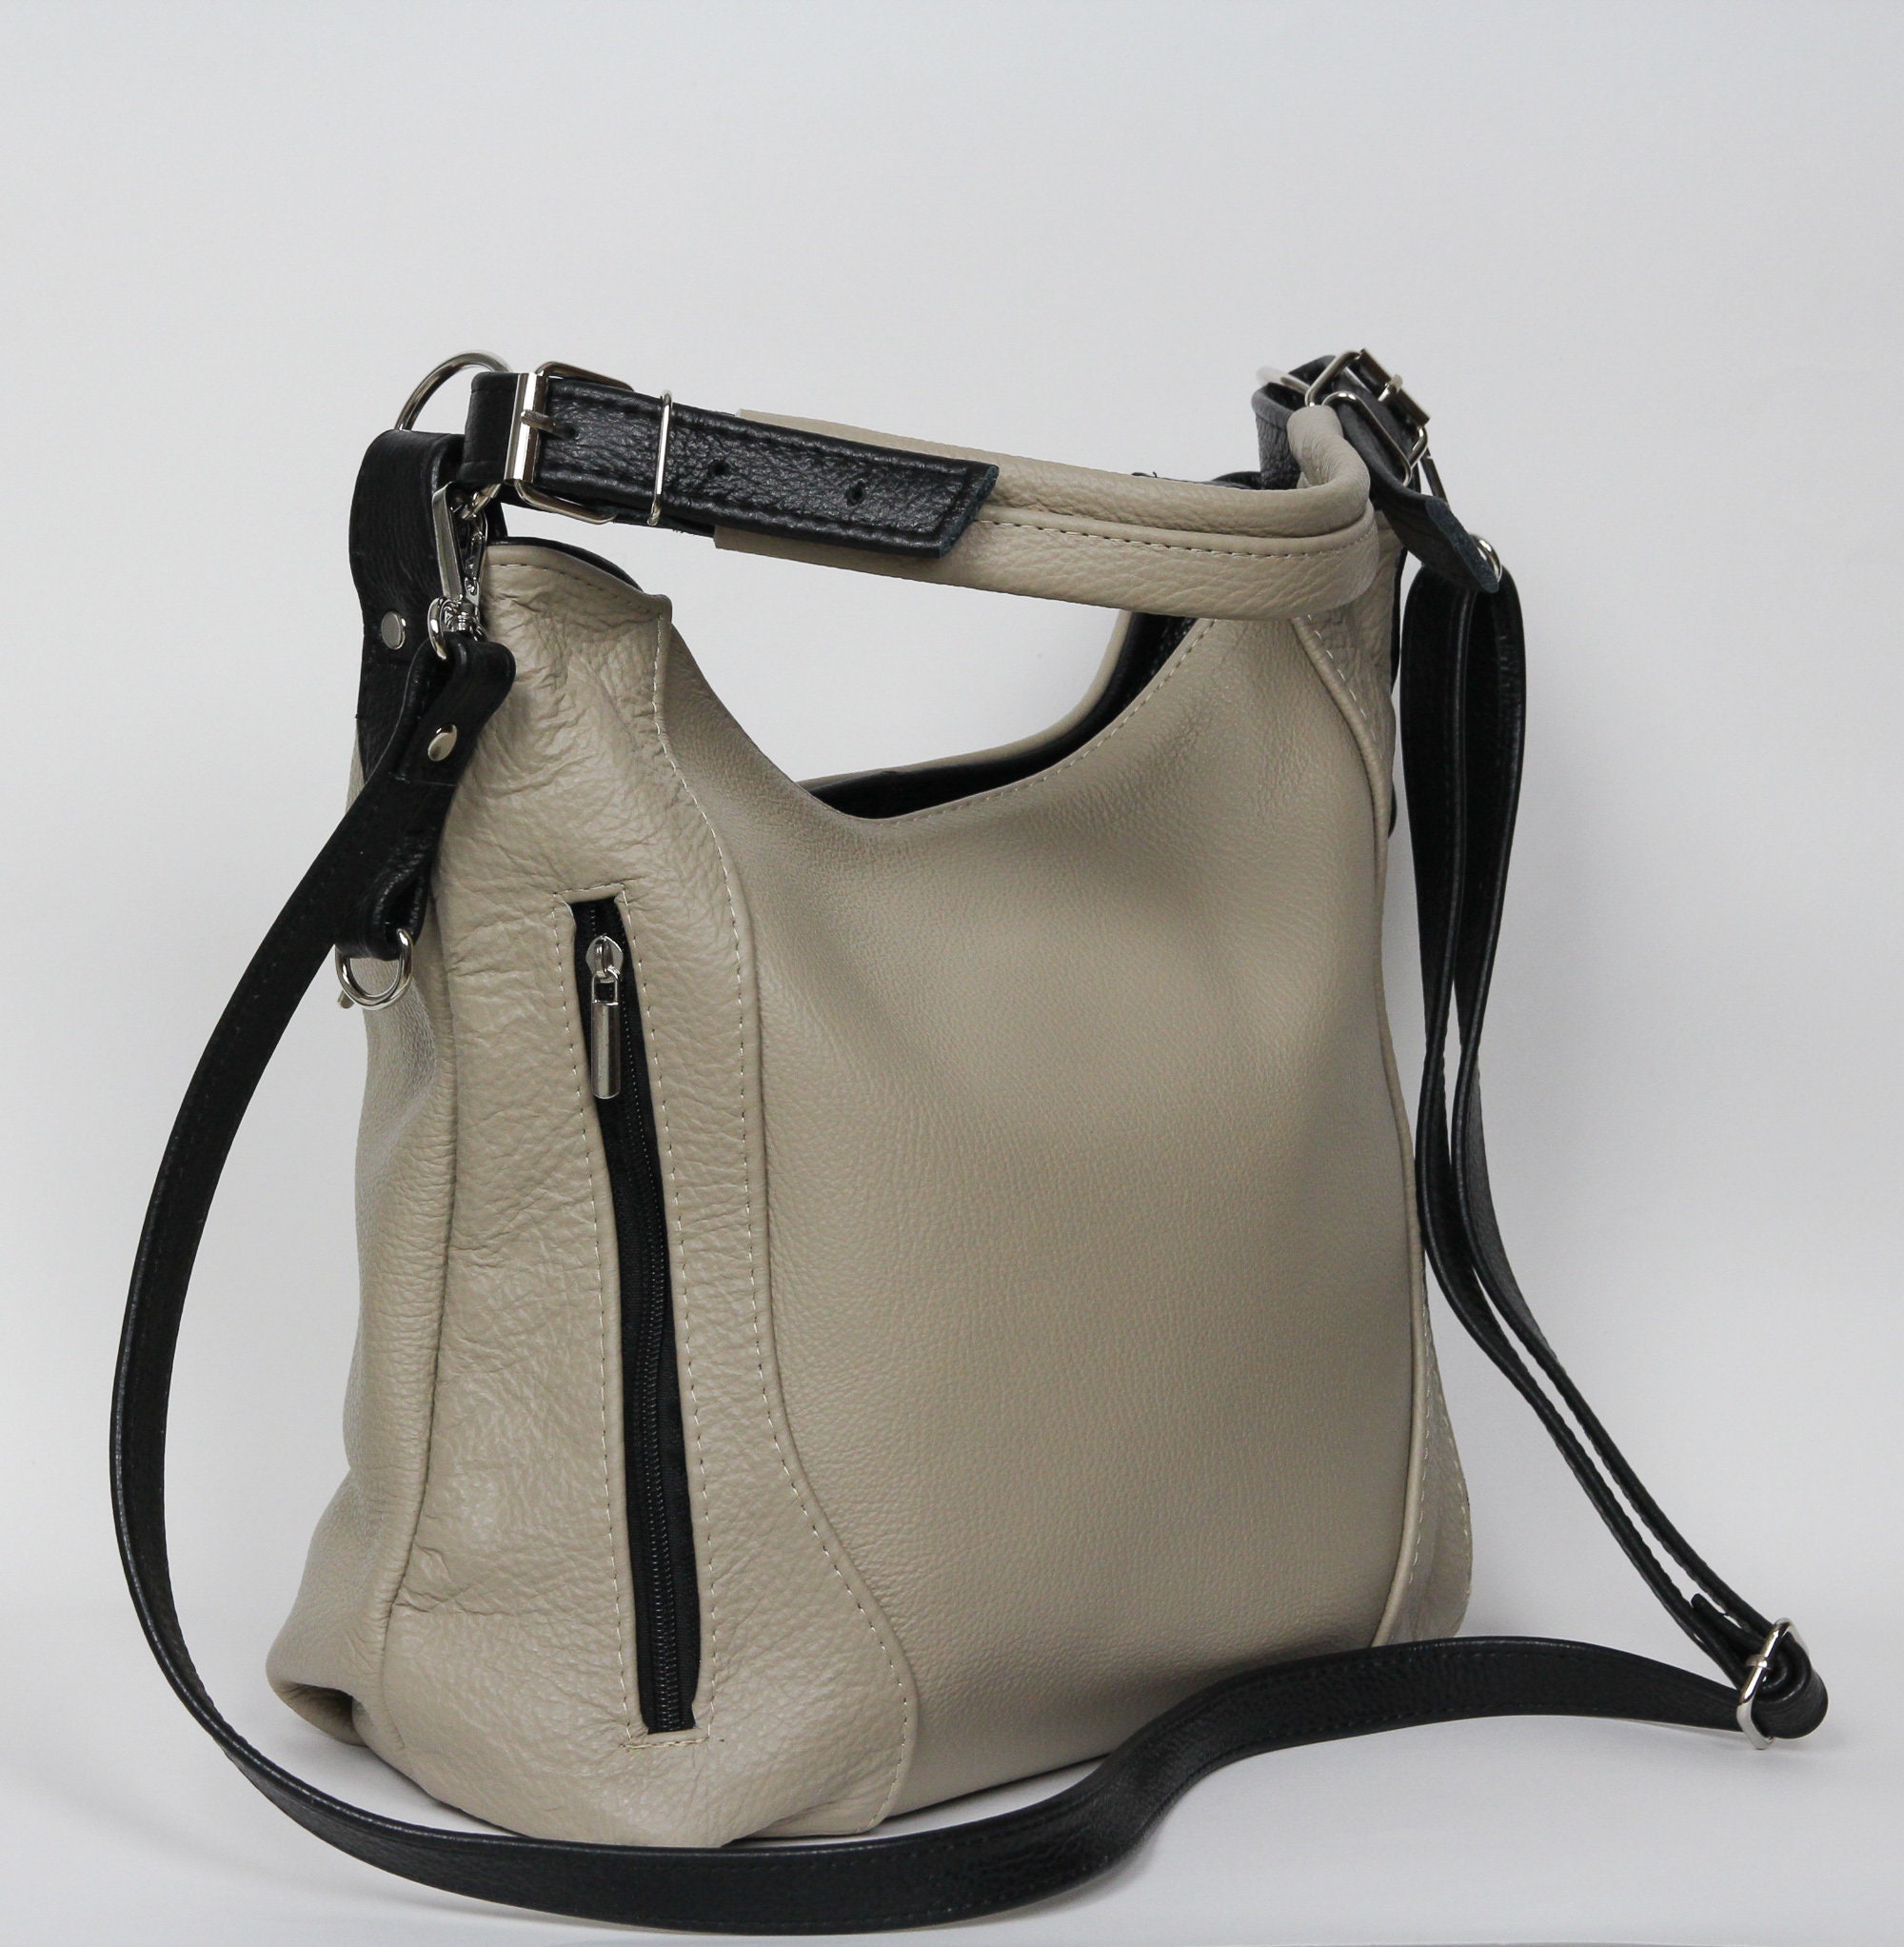 LEATHER SHOULDER Bag HOBO Leather Bag Everyday Crossbody | Etsy